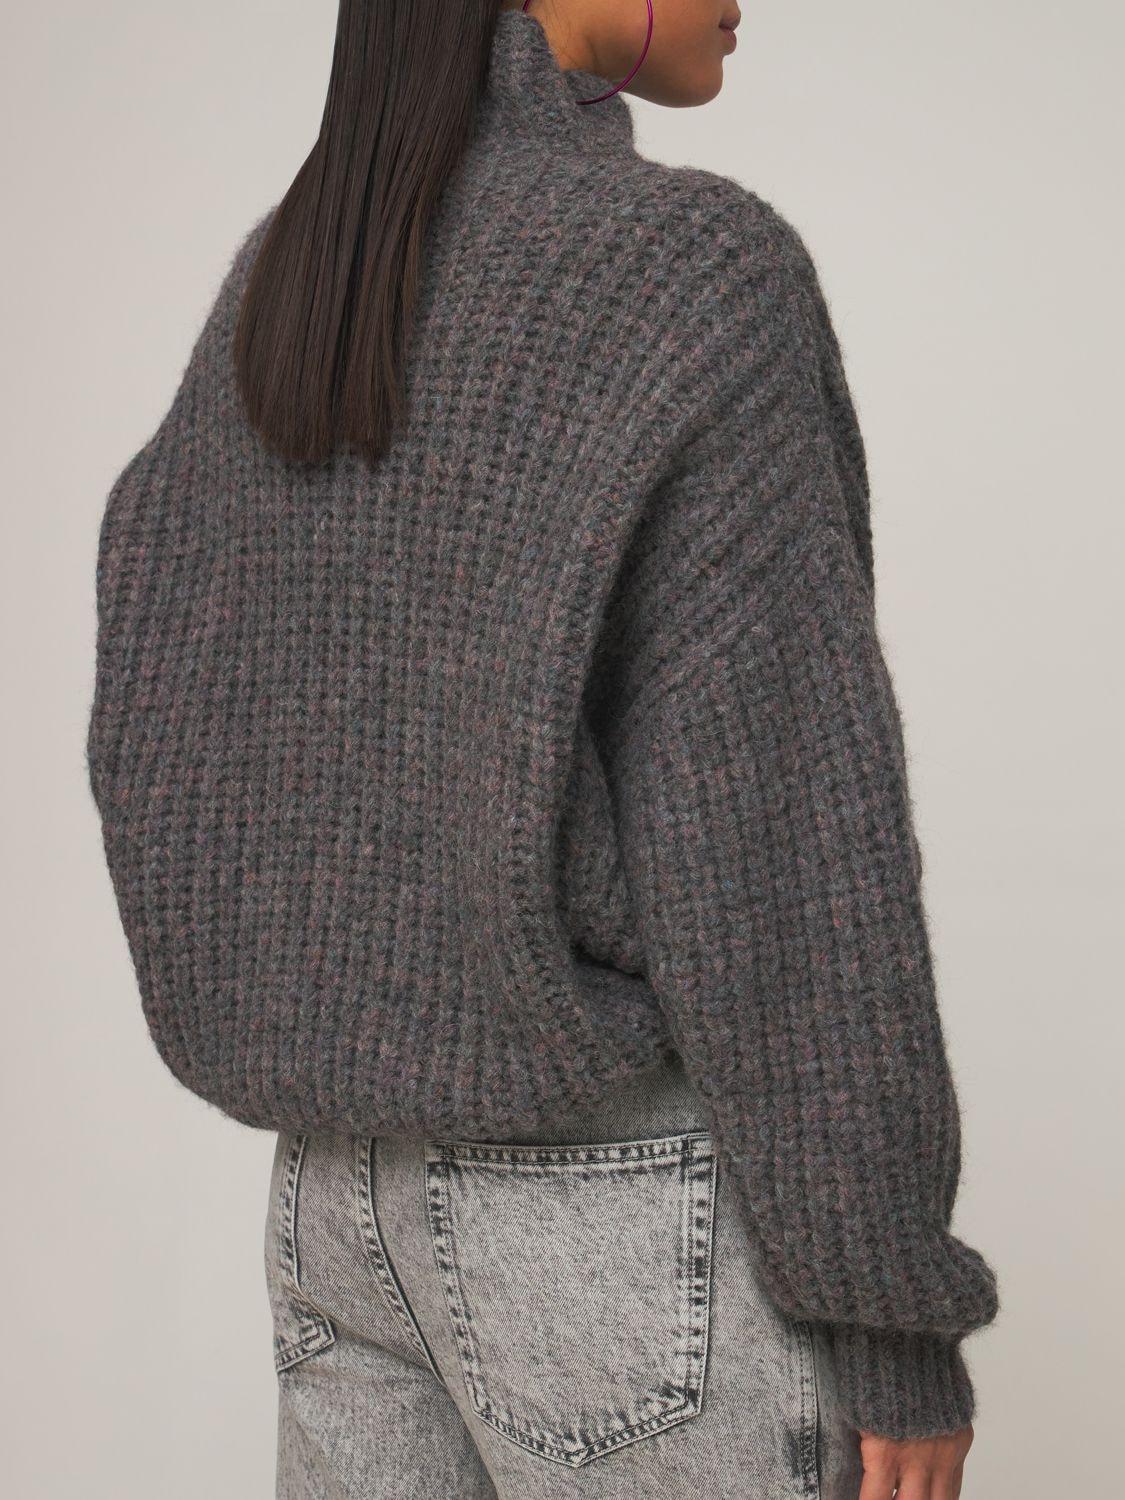 Isabel Marant Iris Turtleneck Alpaca Wool Knit Sweater in Gray | Lyst